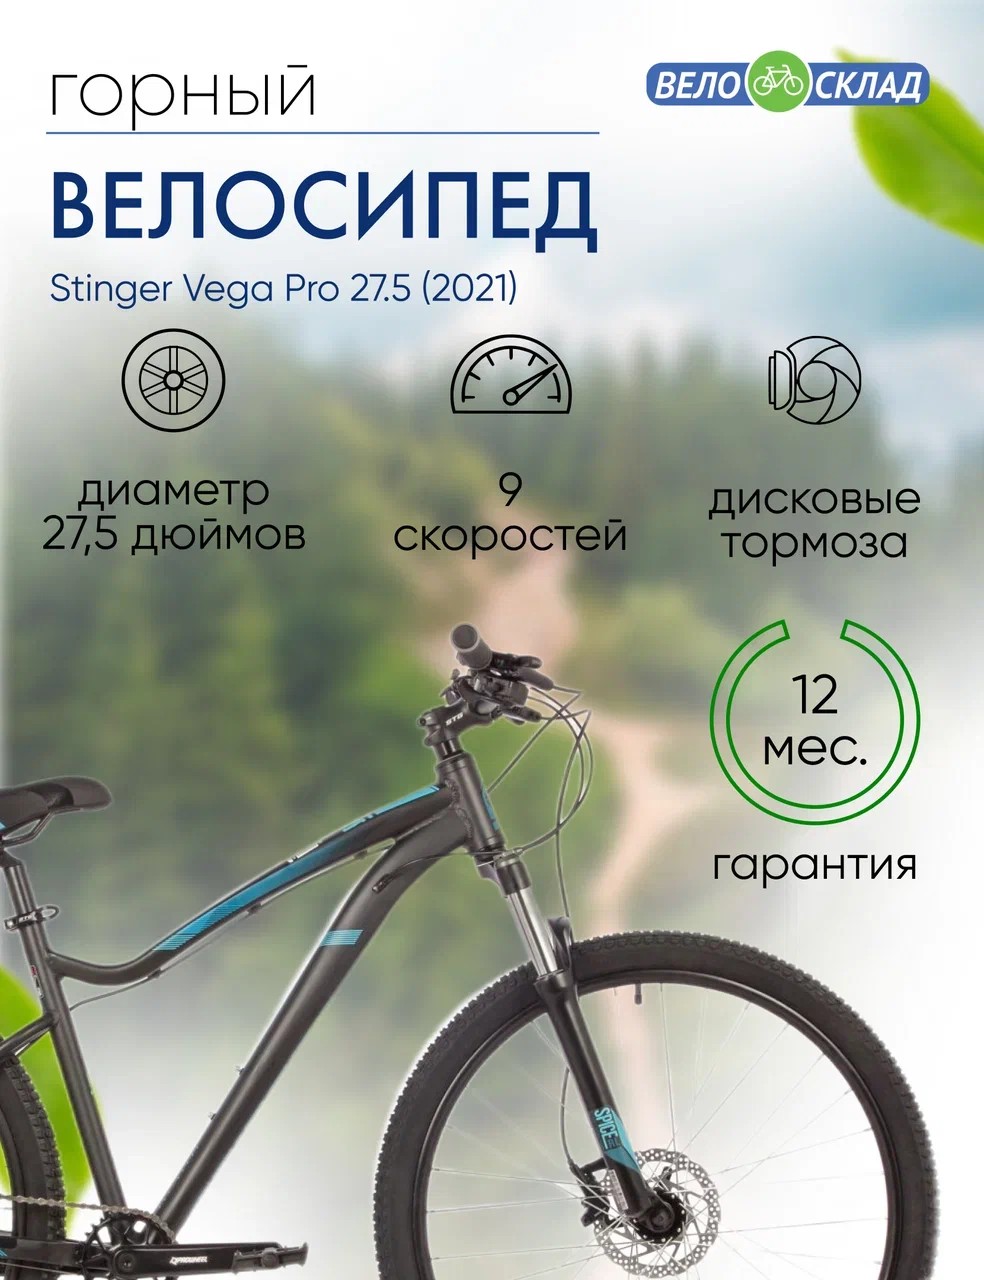 Женский велосипед Stinger Vega Pro 27.5, год 2021, цвет Черный, ростовка 15